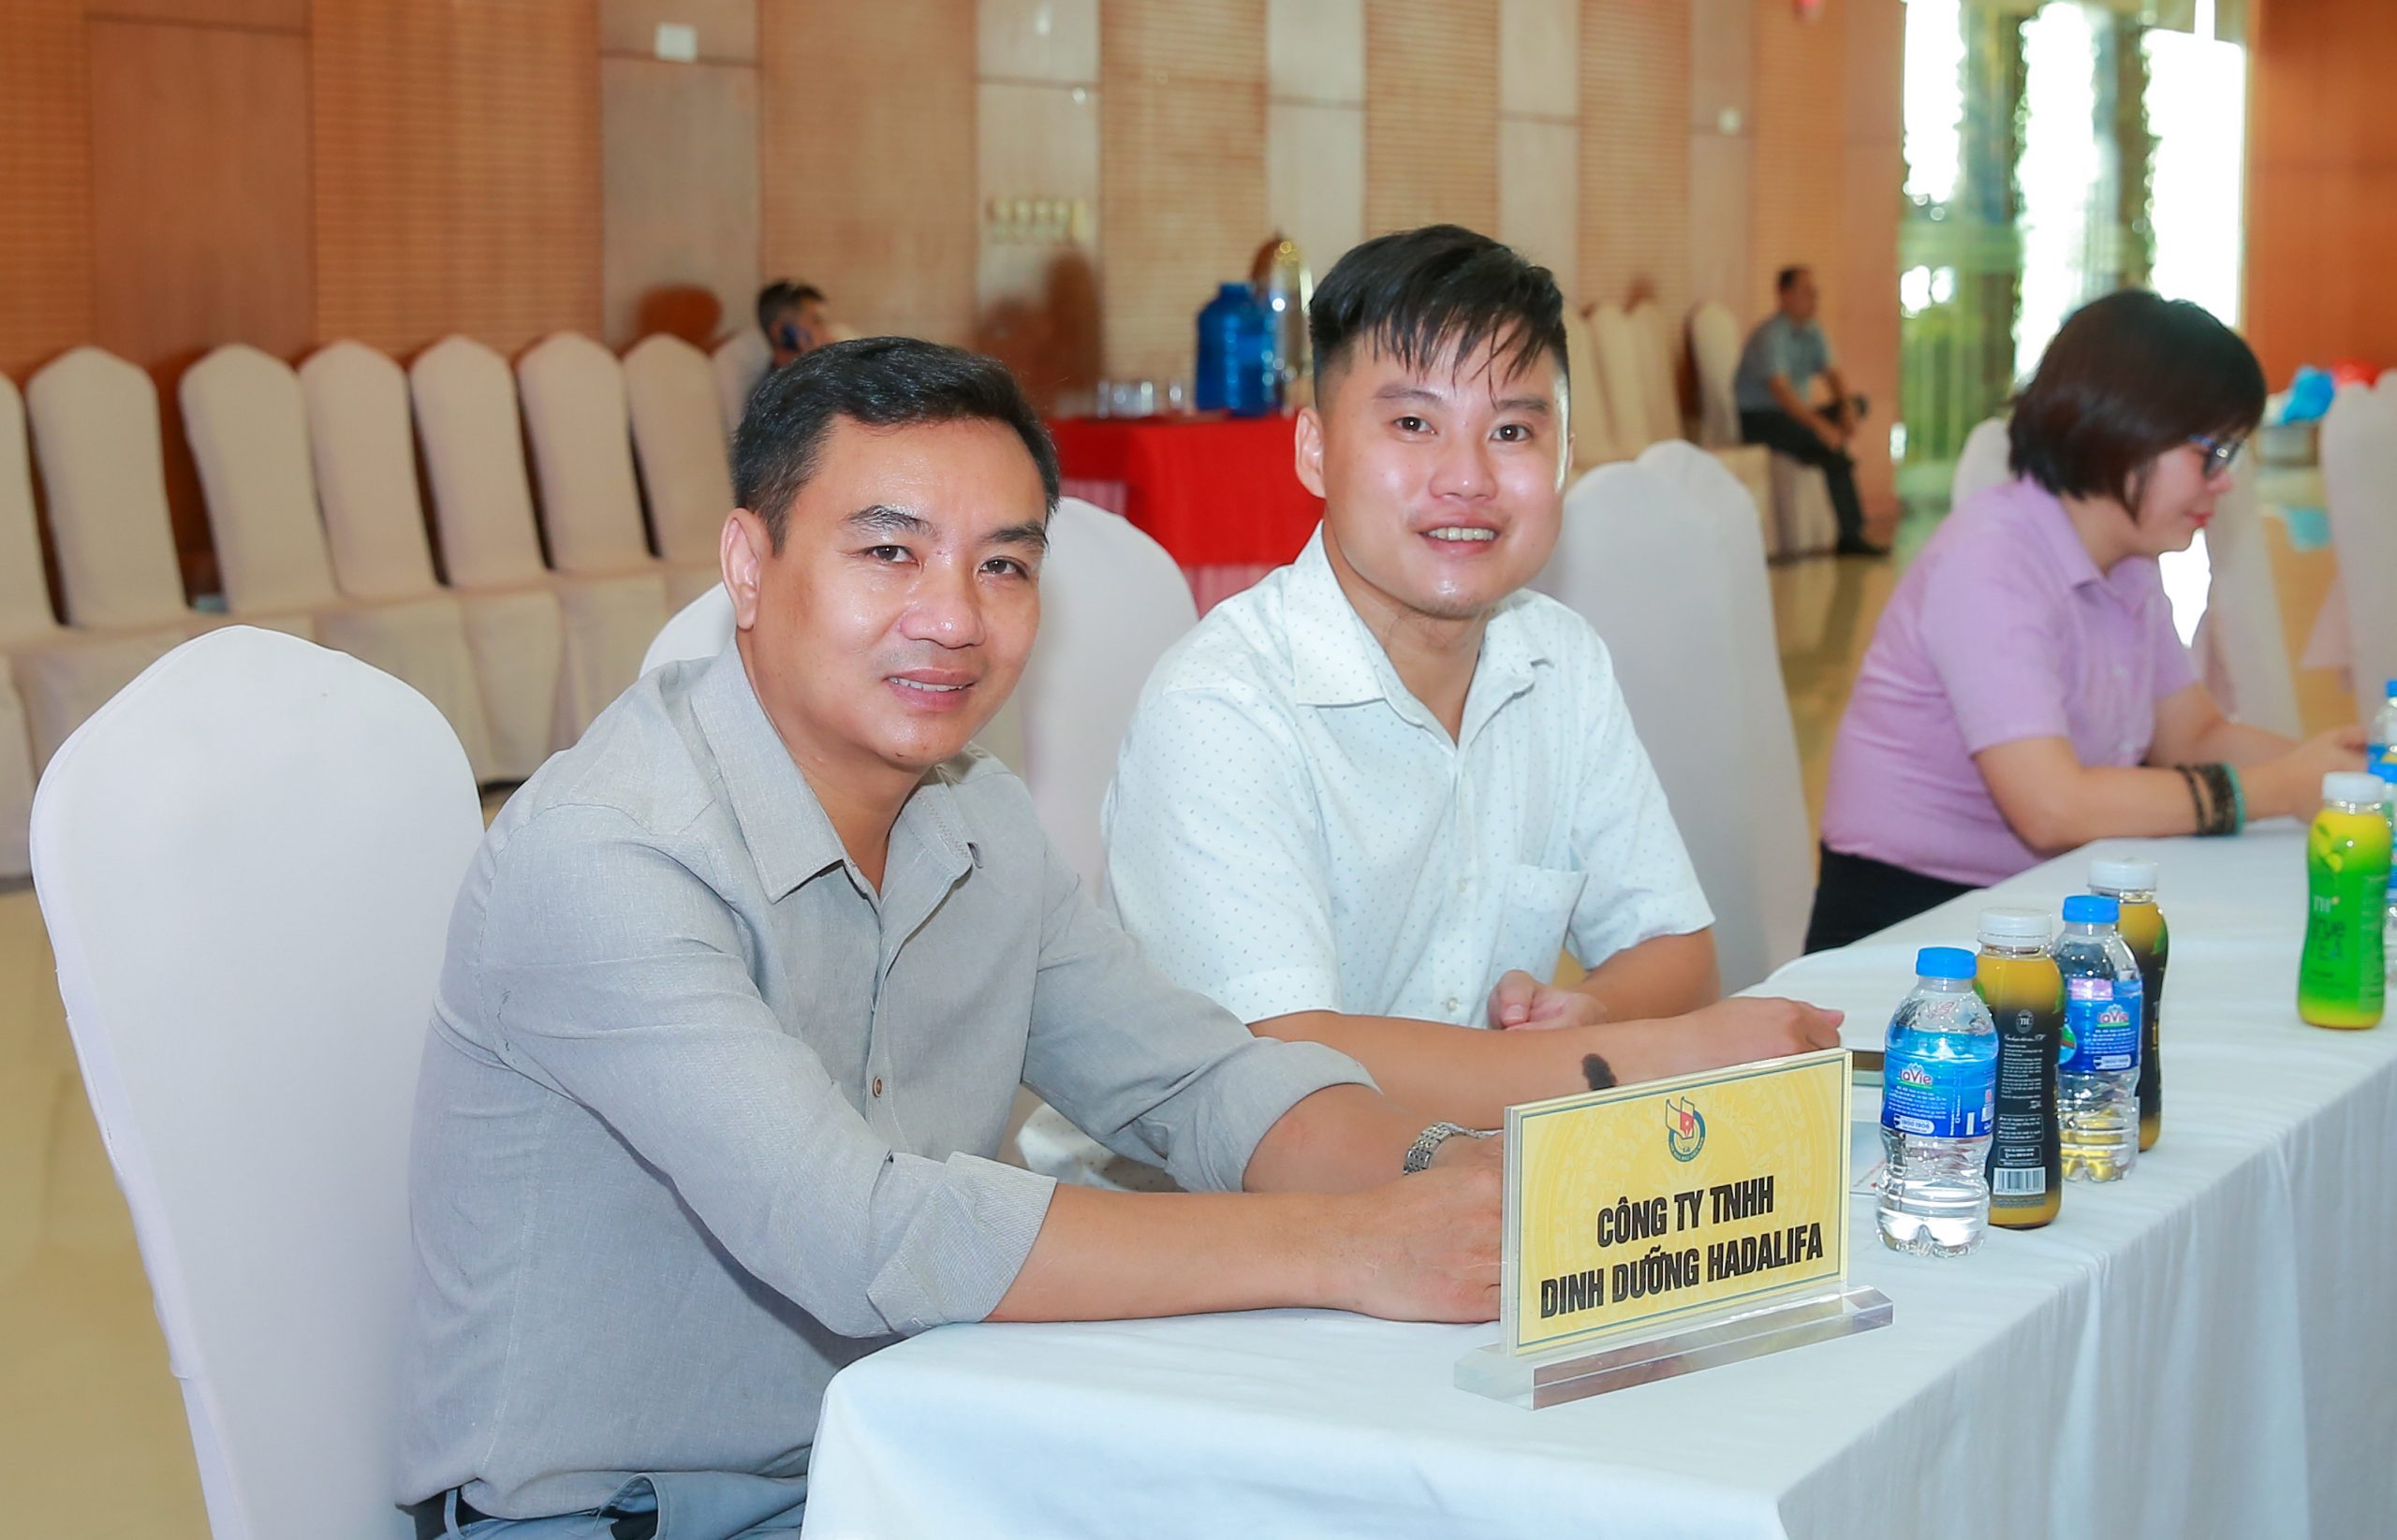 Ông Hoàng Xuân Tuấn - Đại diện Công ty TNHH Dinh Dưỡng HADALIFA (từ trái sang) và đại diện Tạp chí điện tử Sinh thái Nông nghiệp cùng dự Hội nghị 